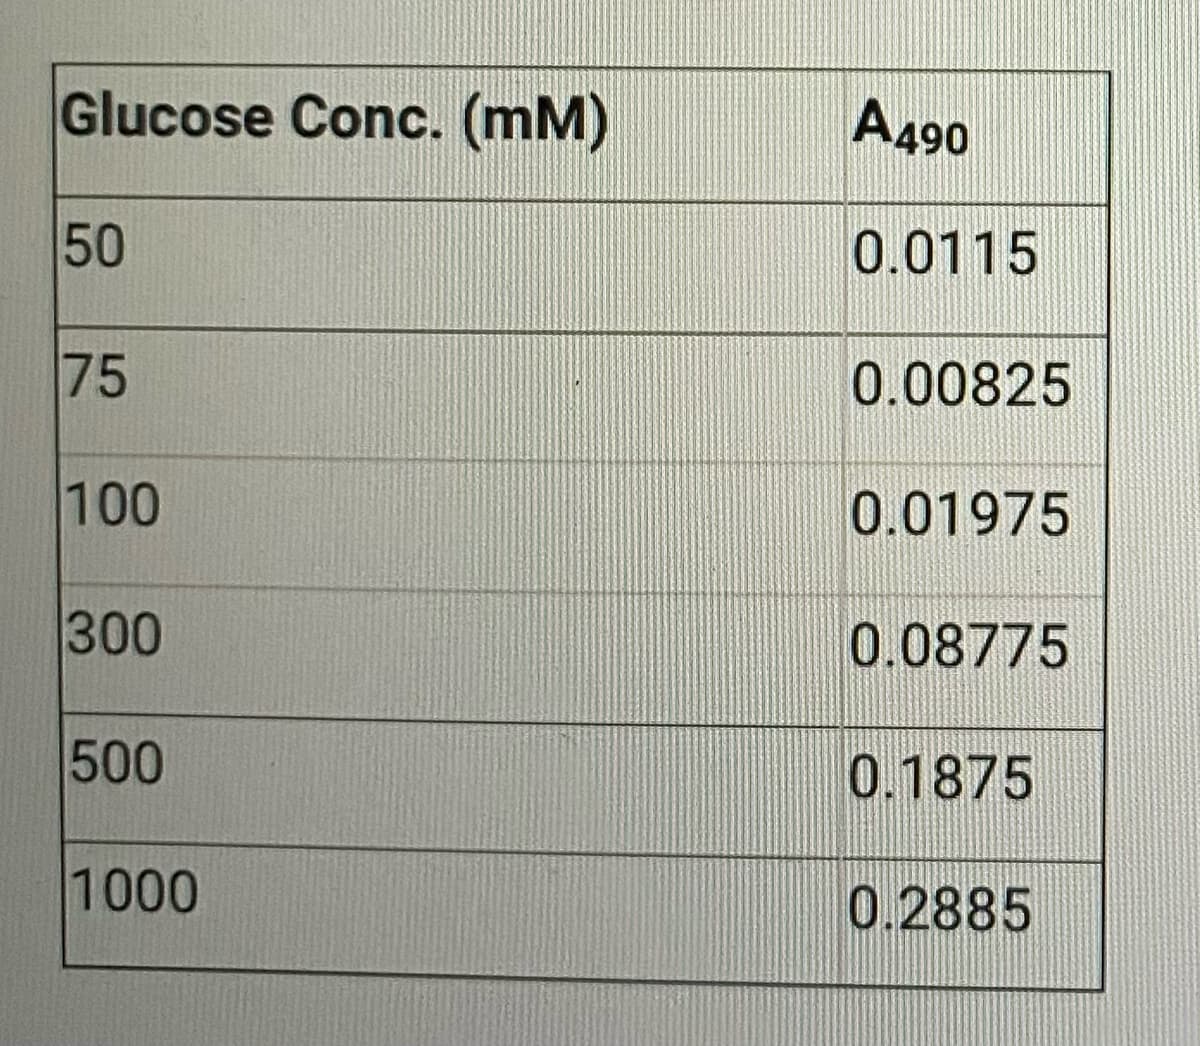 Glucose Conc. (mm)
50
75
100
300
500
1000
A490
0.0115
0.00825
0.01975
0.08775
0.1875
0.2885